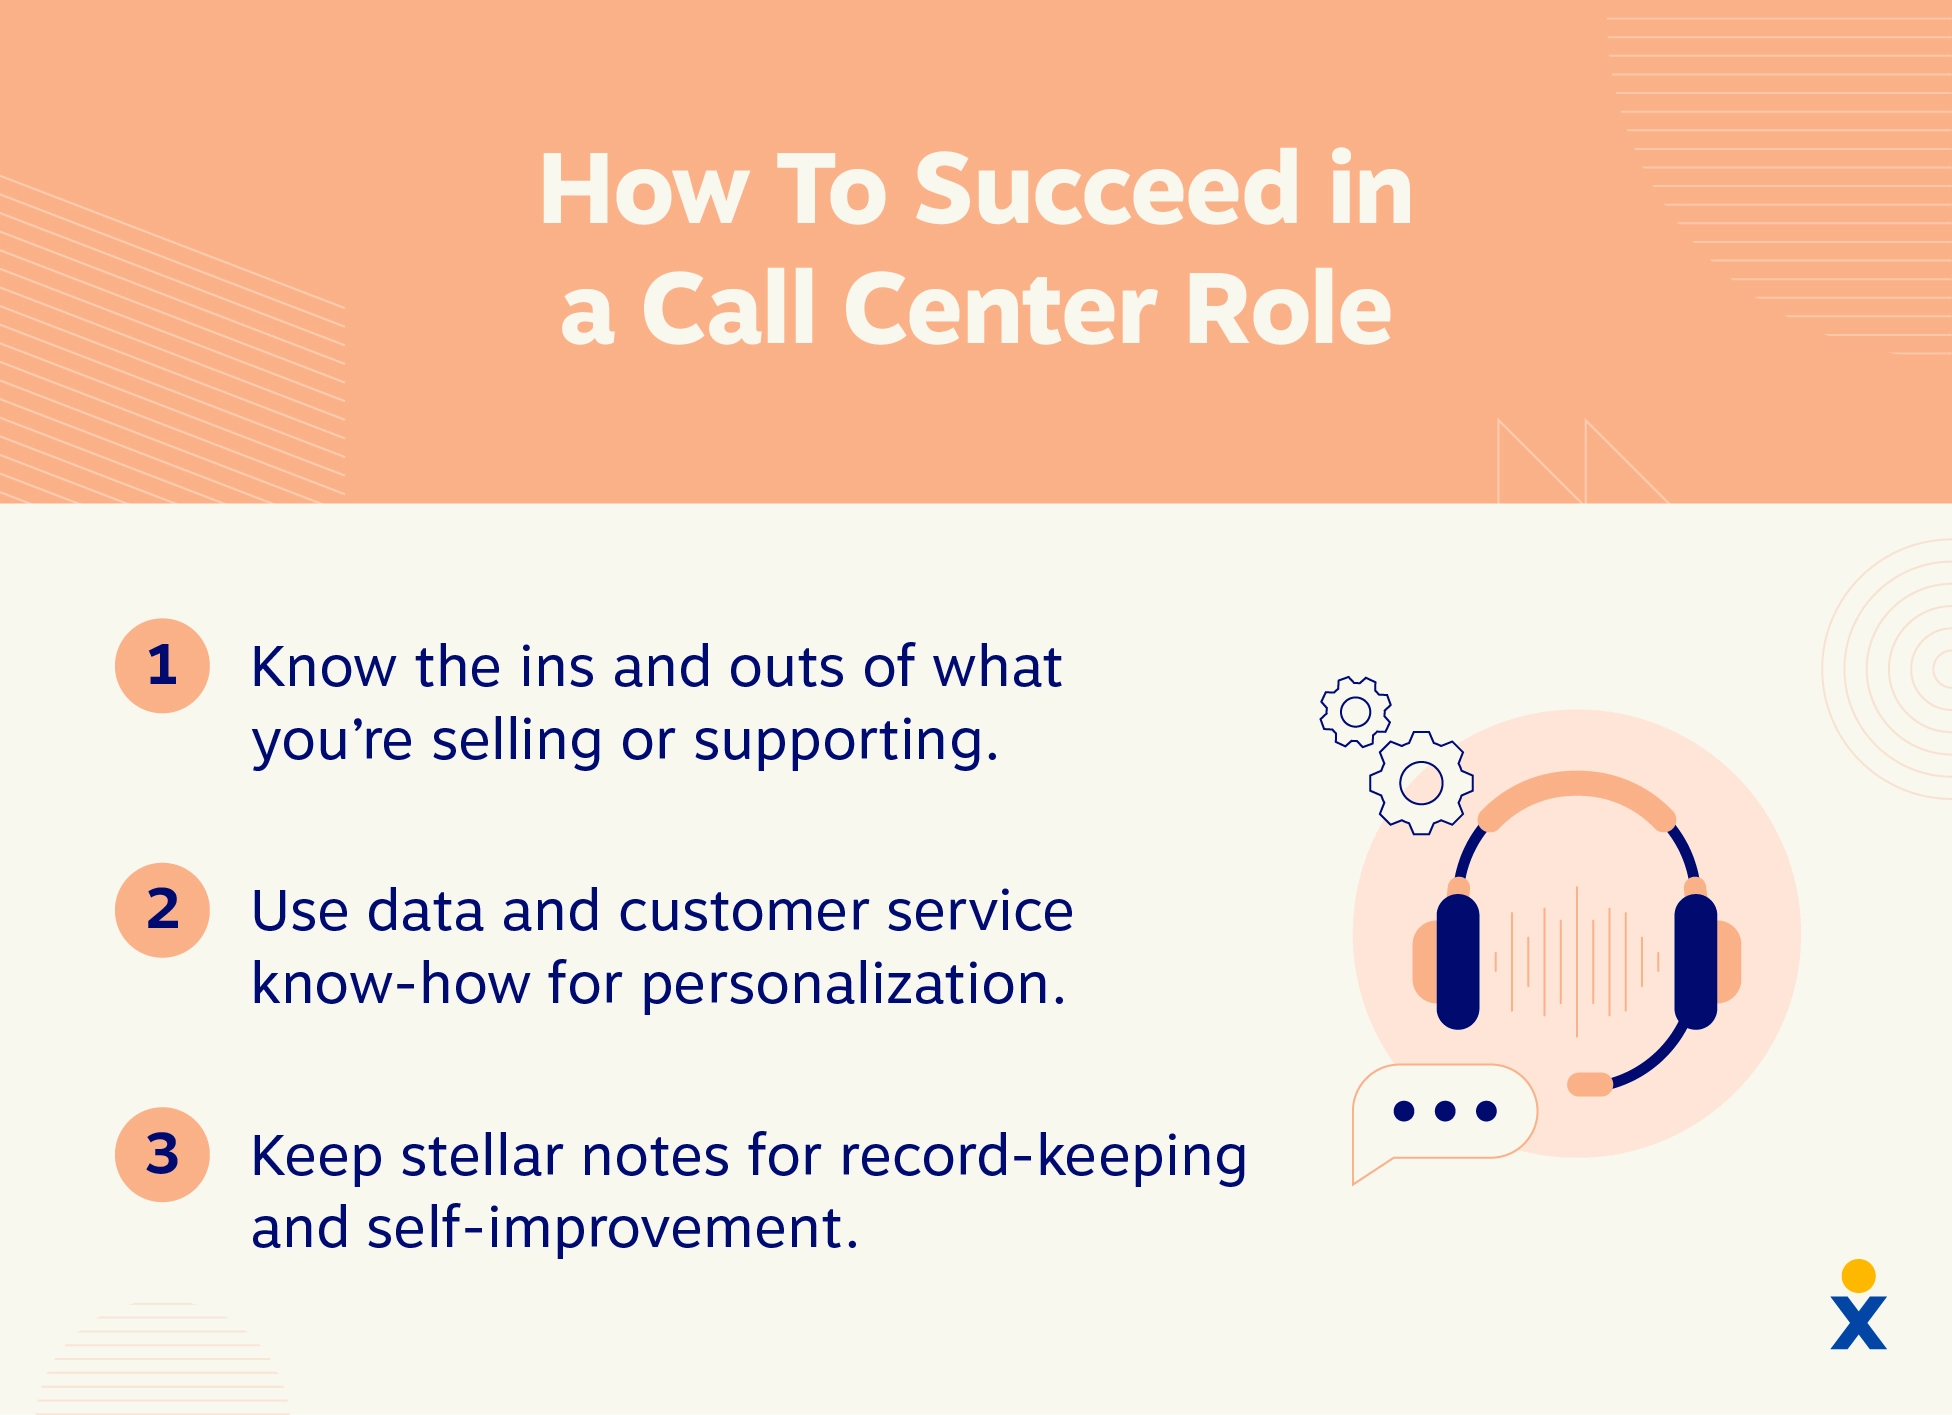 ثلاث نصائح حول كيفية النجاح في دور مركز الاتصال.